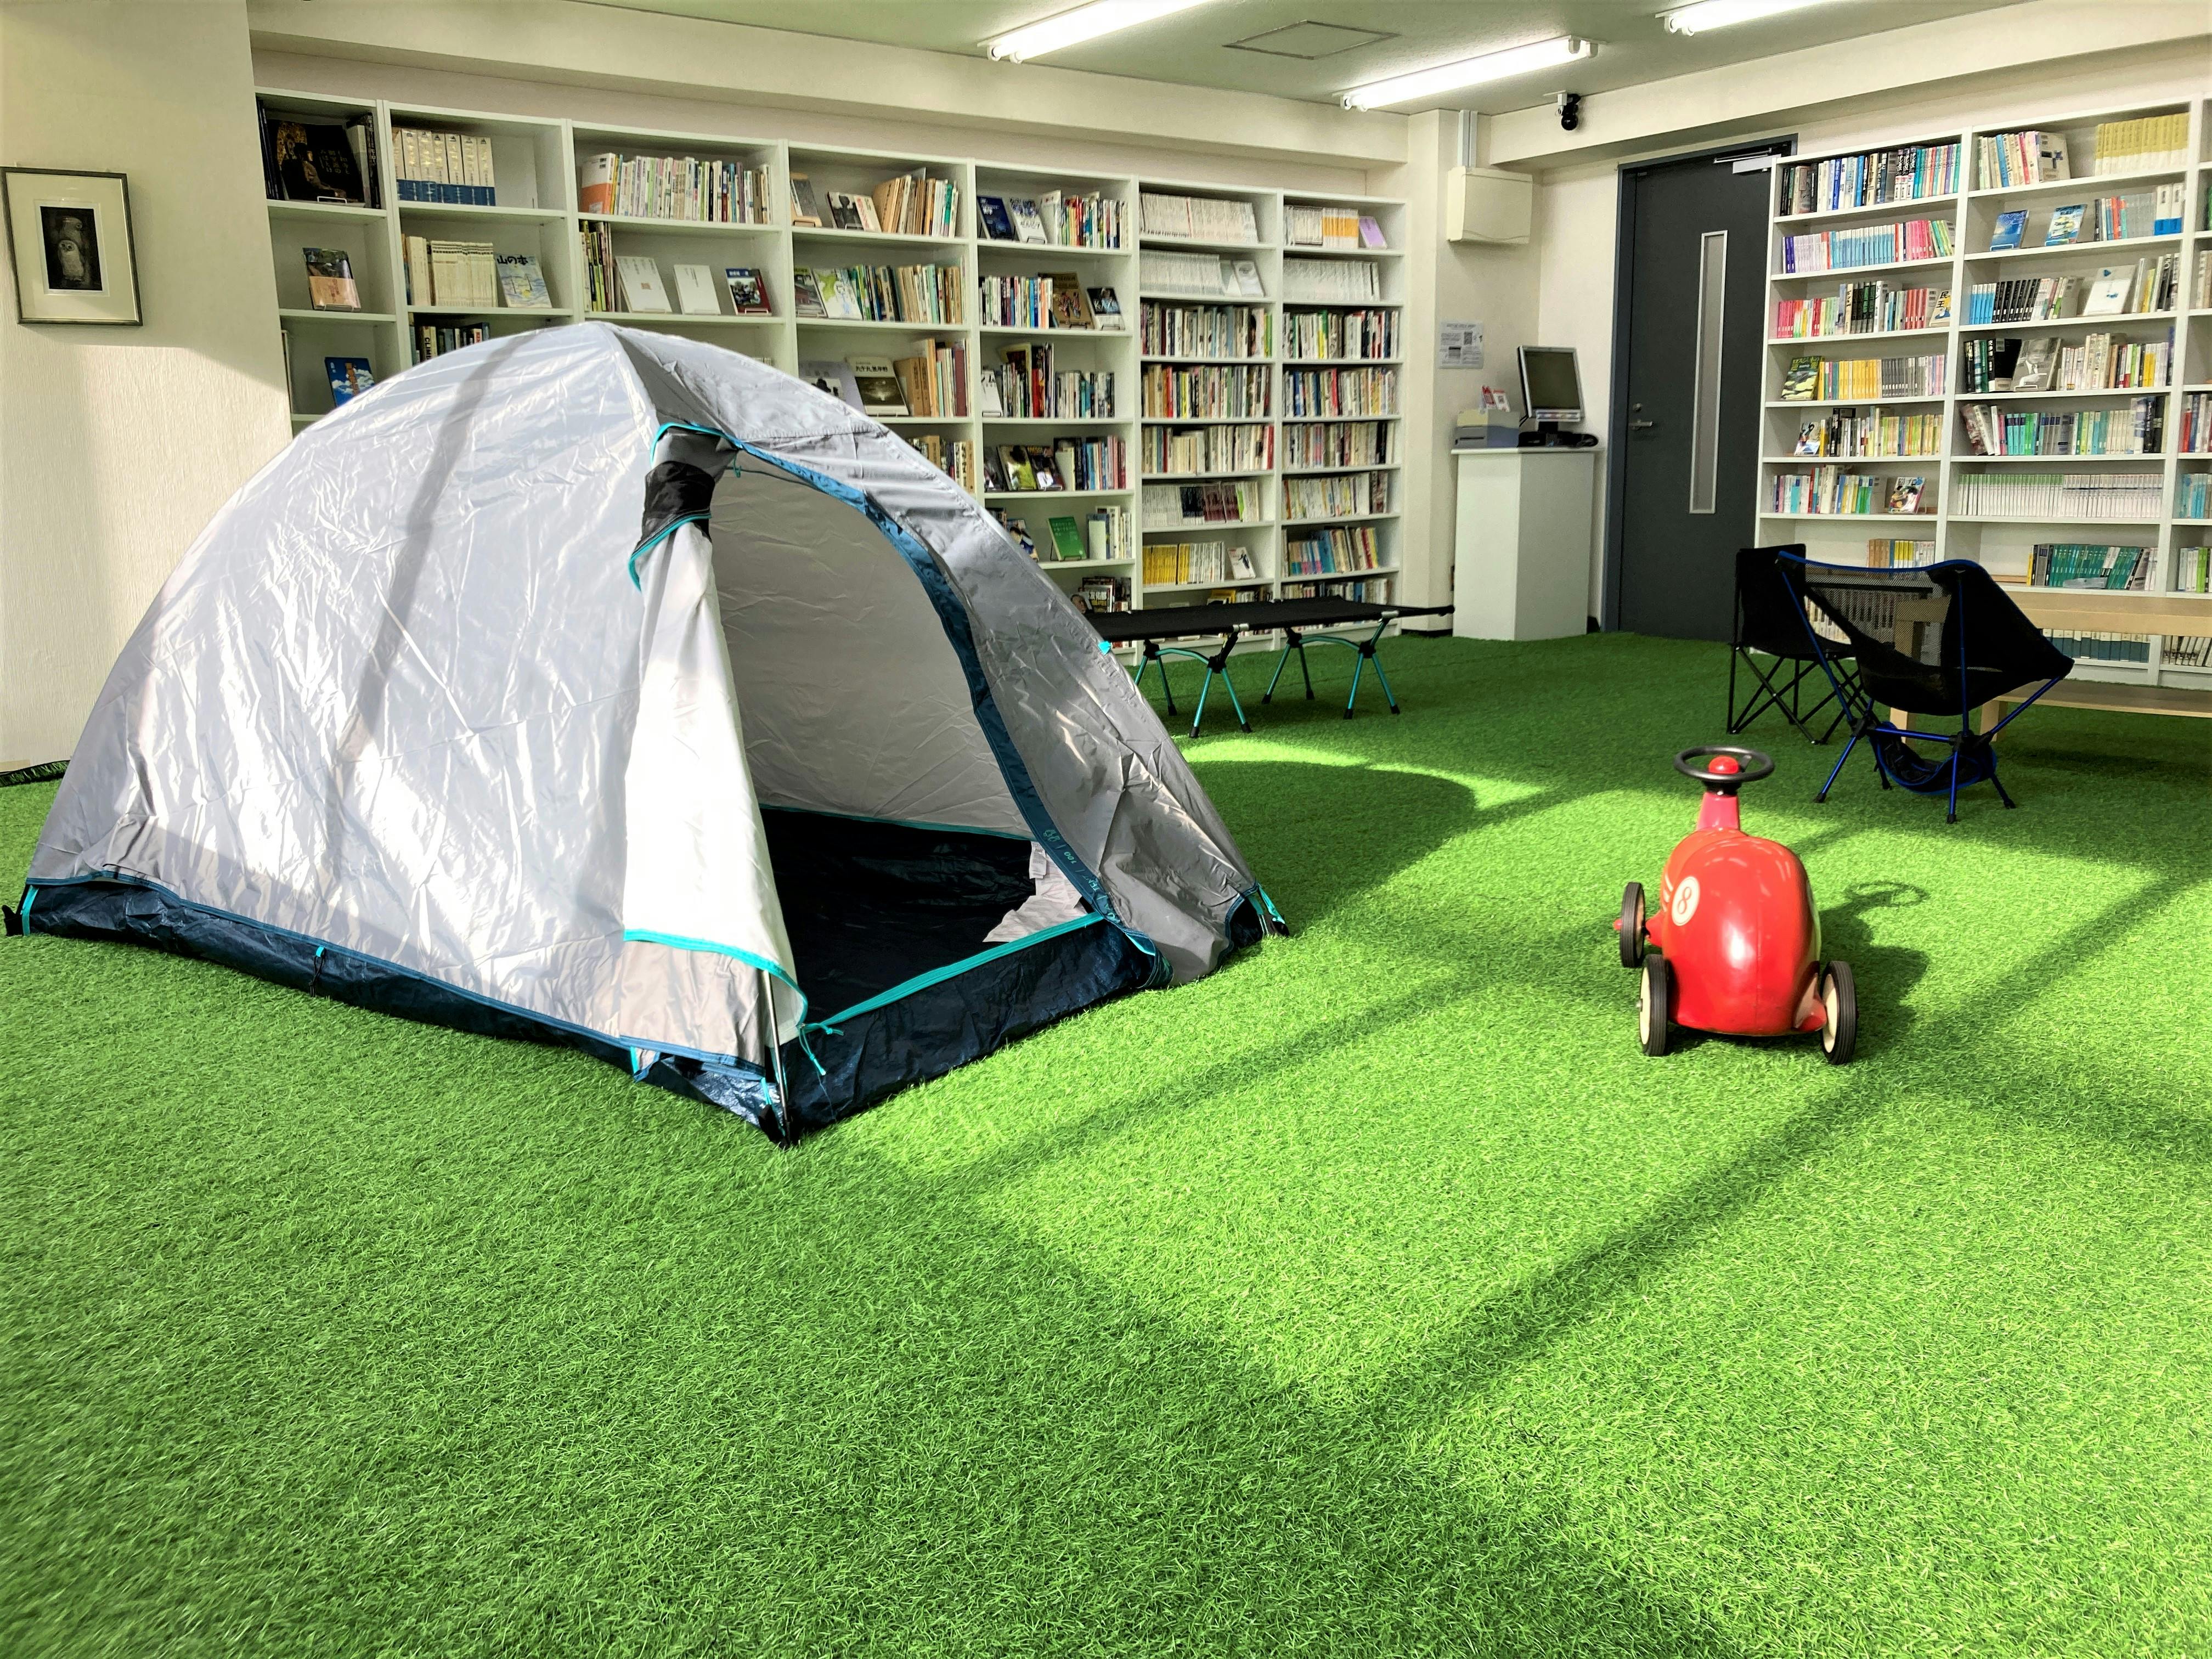 本に囲まれた屋内公園。芝生とテントの空間で天気を気にせず気分を変えて